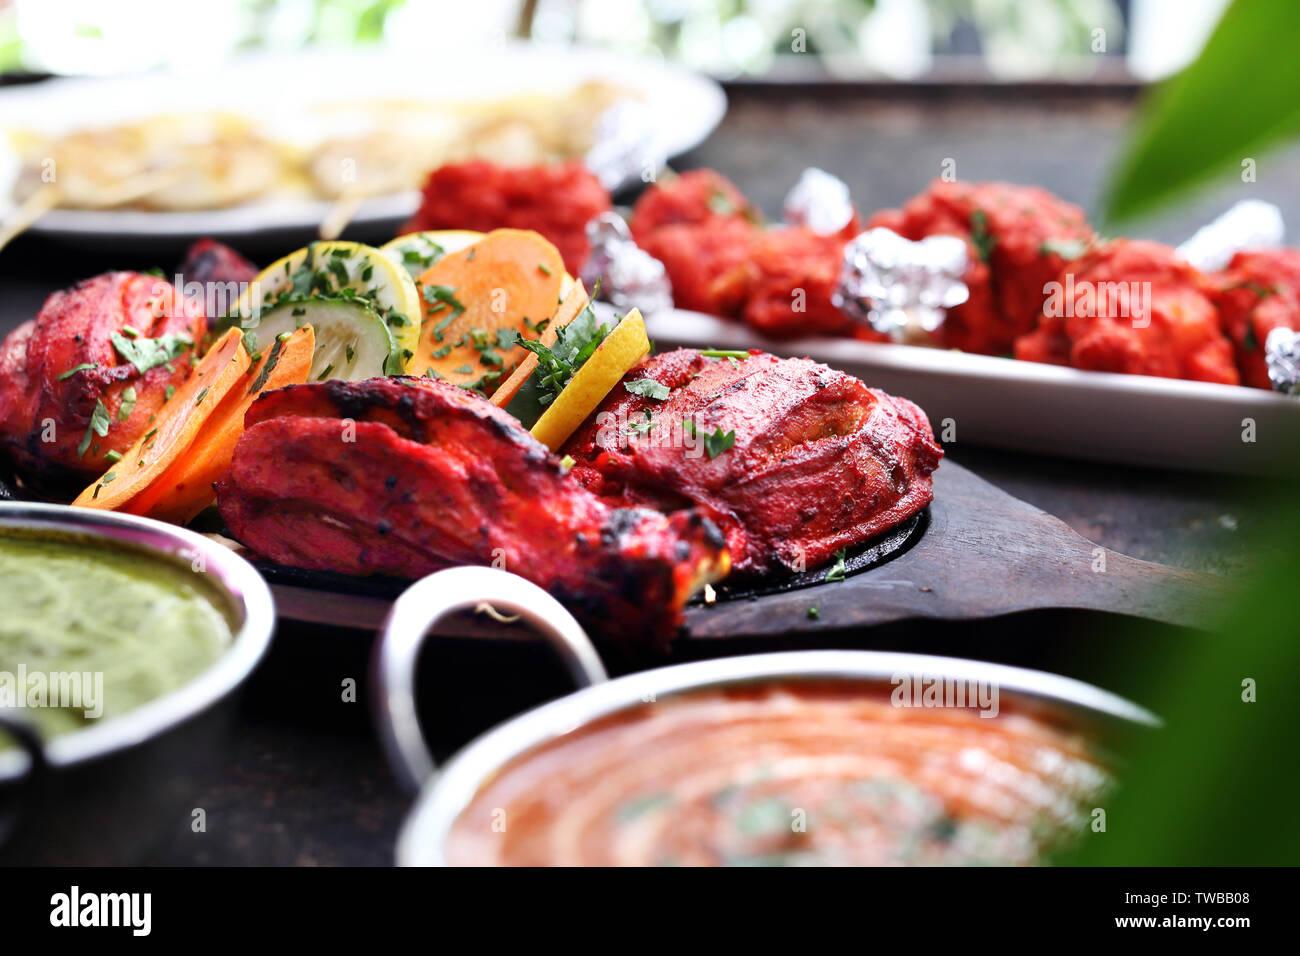 La cuisine thaïlandaise, des plats au curry aromatique. Plats colorés. Banque D'Images